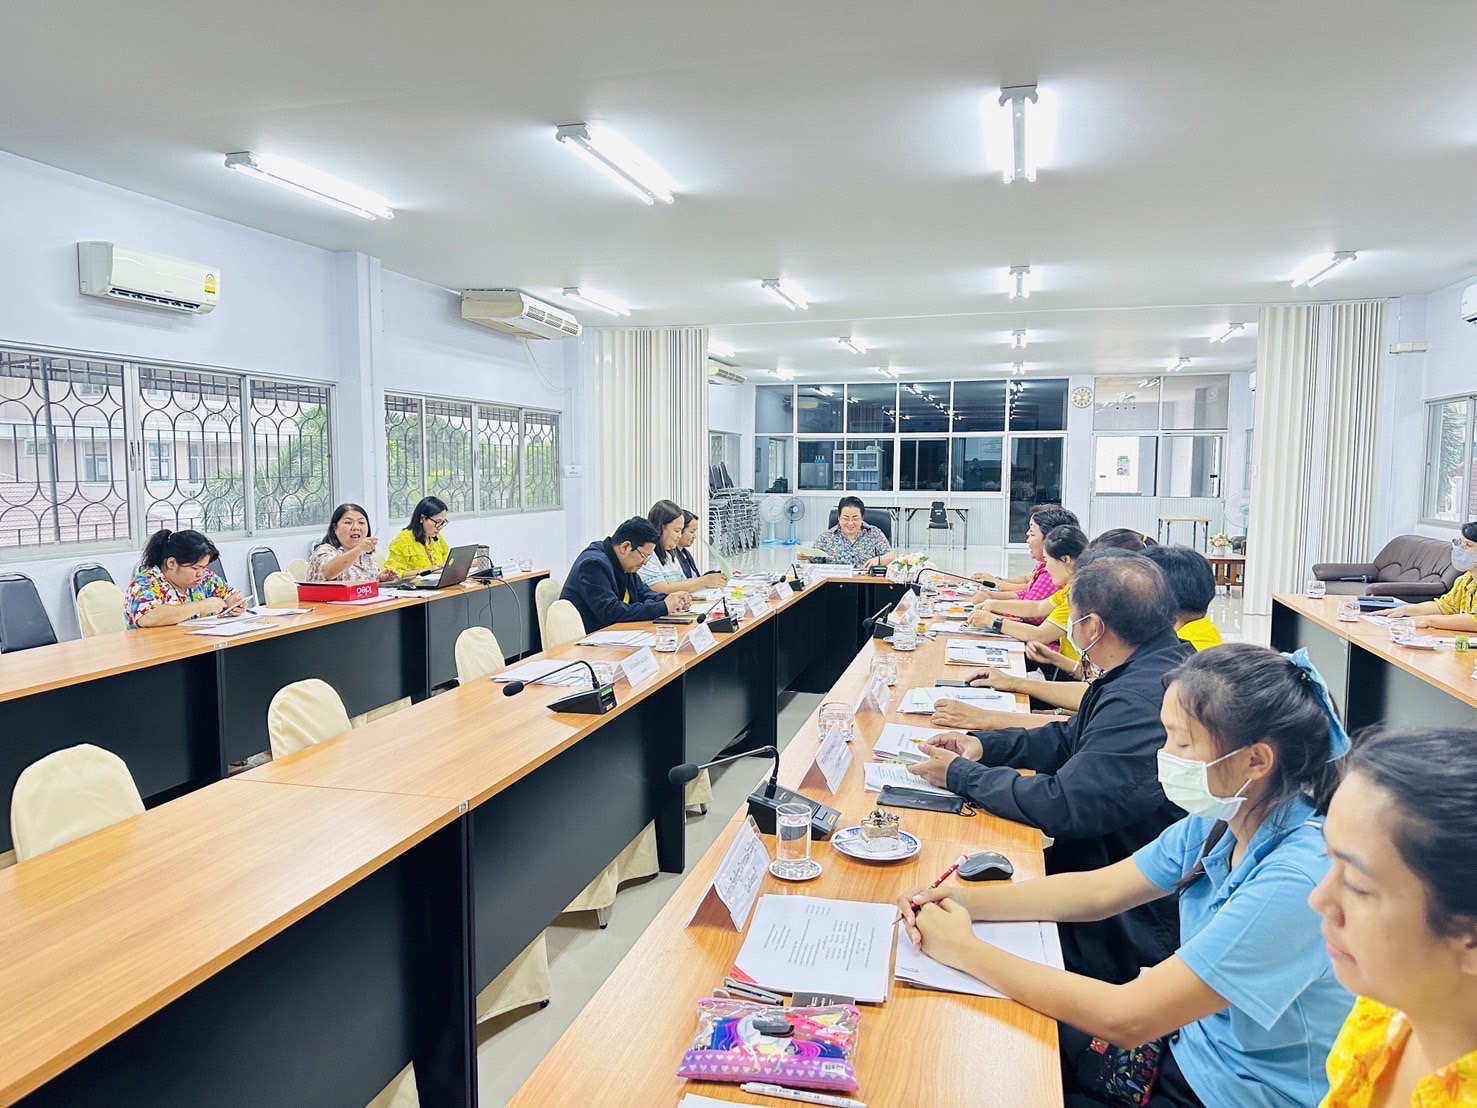 ประชุมคณะกรรมการพิจารณาให้ความช่วยเหลือผู้ประสบปัญหาทางสังคมจังหวัดชลบุรี ครั้งที่ 7/2567